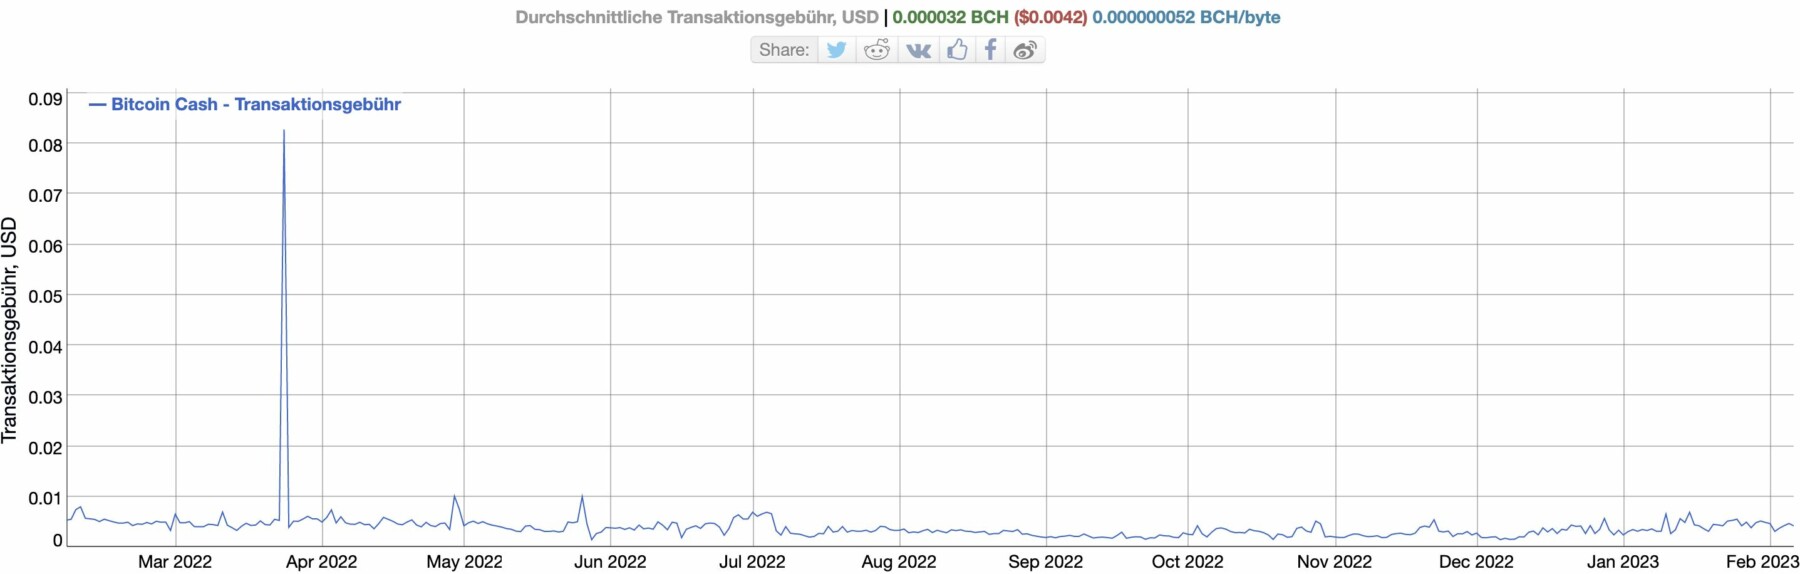 Durchschnittliche Transaktionsgebühr Bitcoin Cash BCH